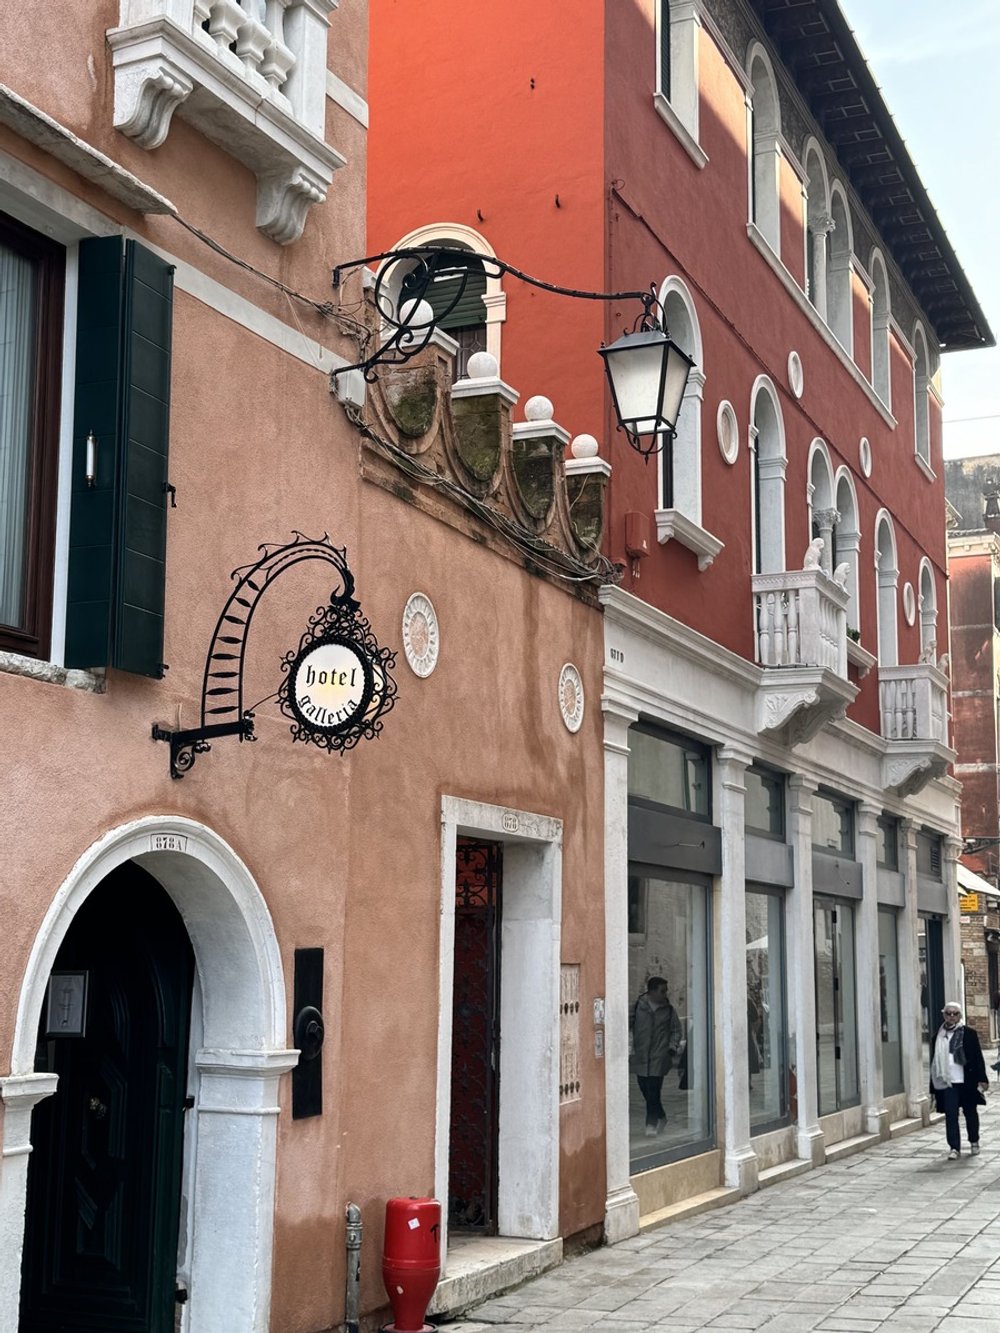 "Dwall: Revolutionäre Luftentfeuchtung für feuchte Wände in Venedig"